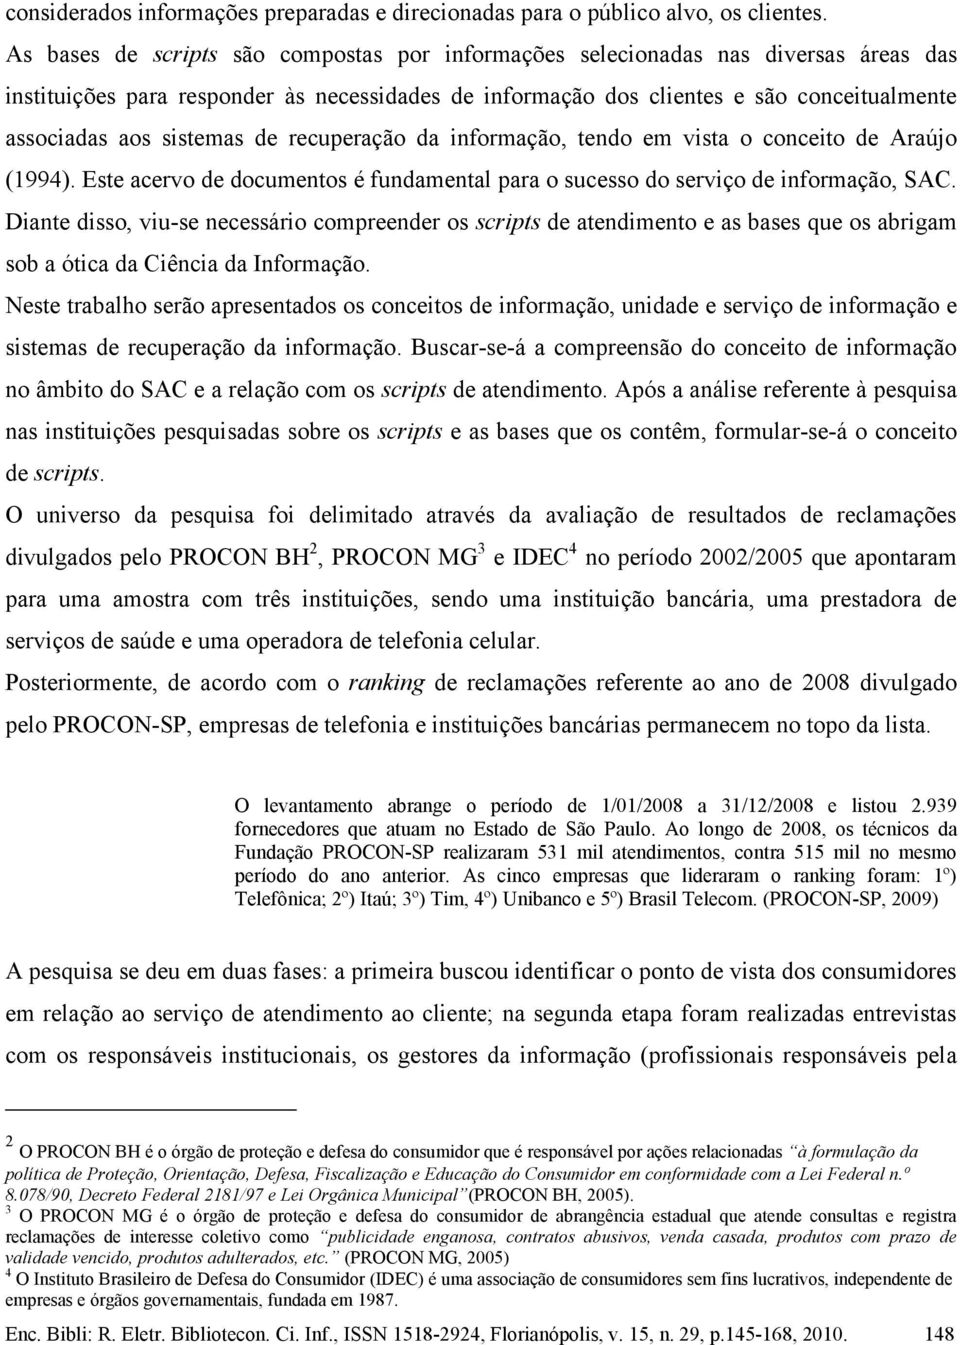 sistemas de recuperação da informação, tendo em vista o conceito de Araújo (1994). Este acervo de documentos é fundamental para o sucesso do serviço de informação, SAC.